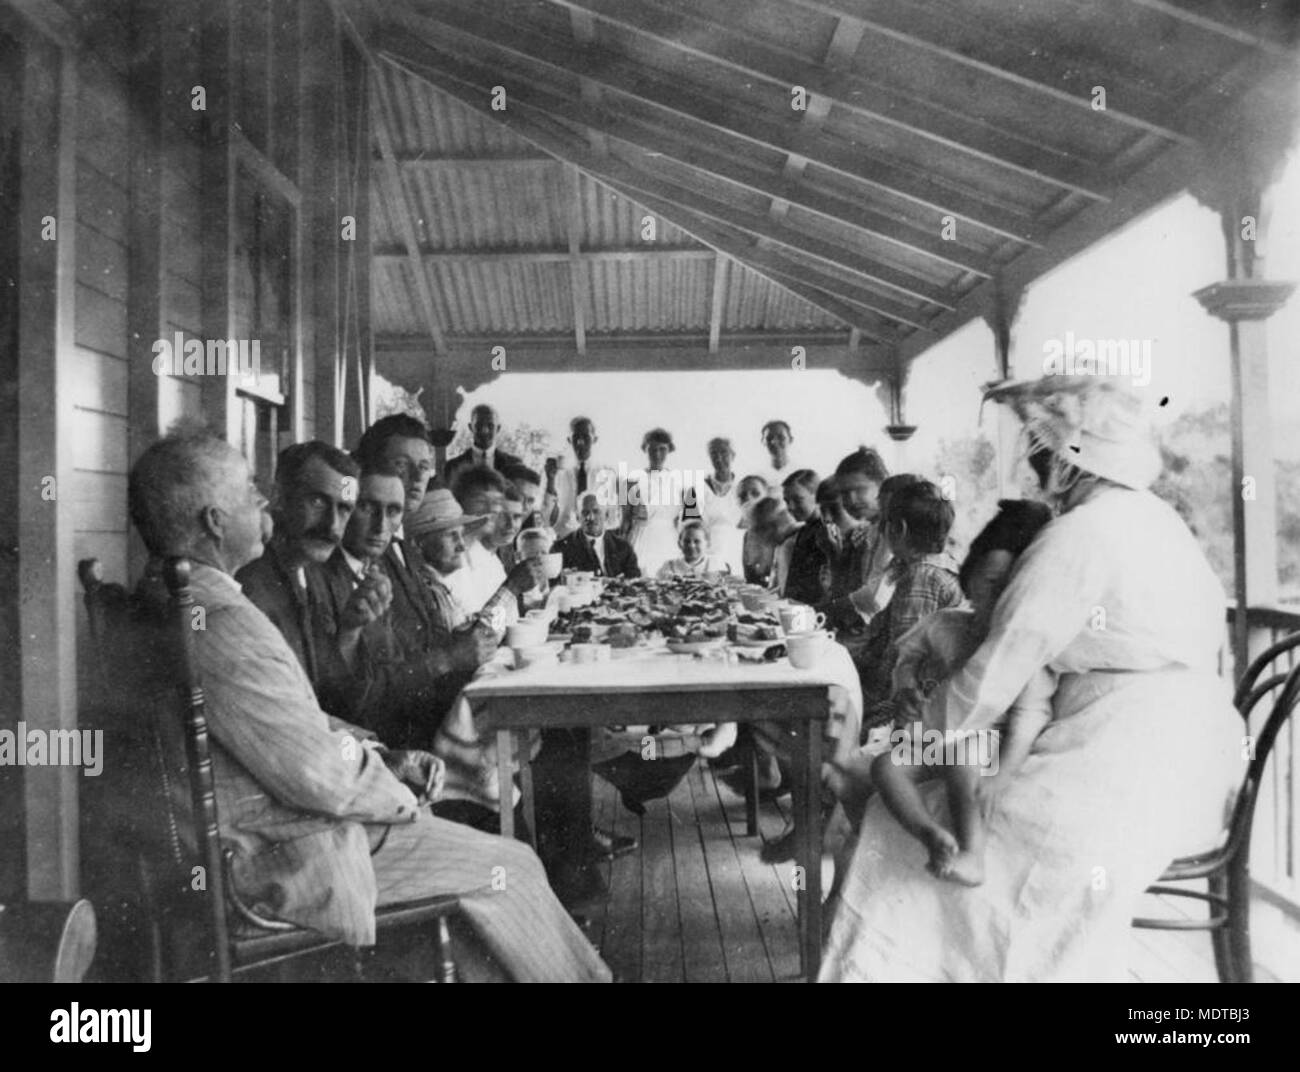 Mittagessen auf der Veranda von George Davis', Barneyview. Ort: Queensland, Australien Beschreibung: Ca. 25 Männer, Frauen und Kinder sind in einer Tabelle unter einer Veranda mit einem Mittagessen, sitzt, bereit zu essen. Stockfoto